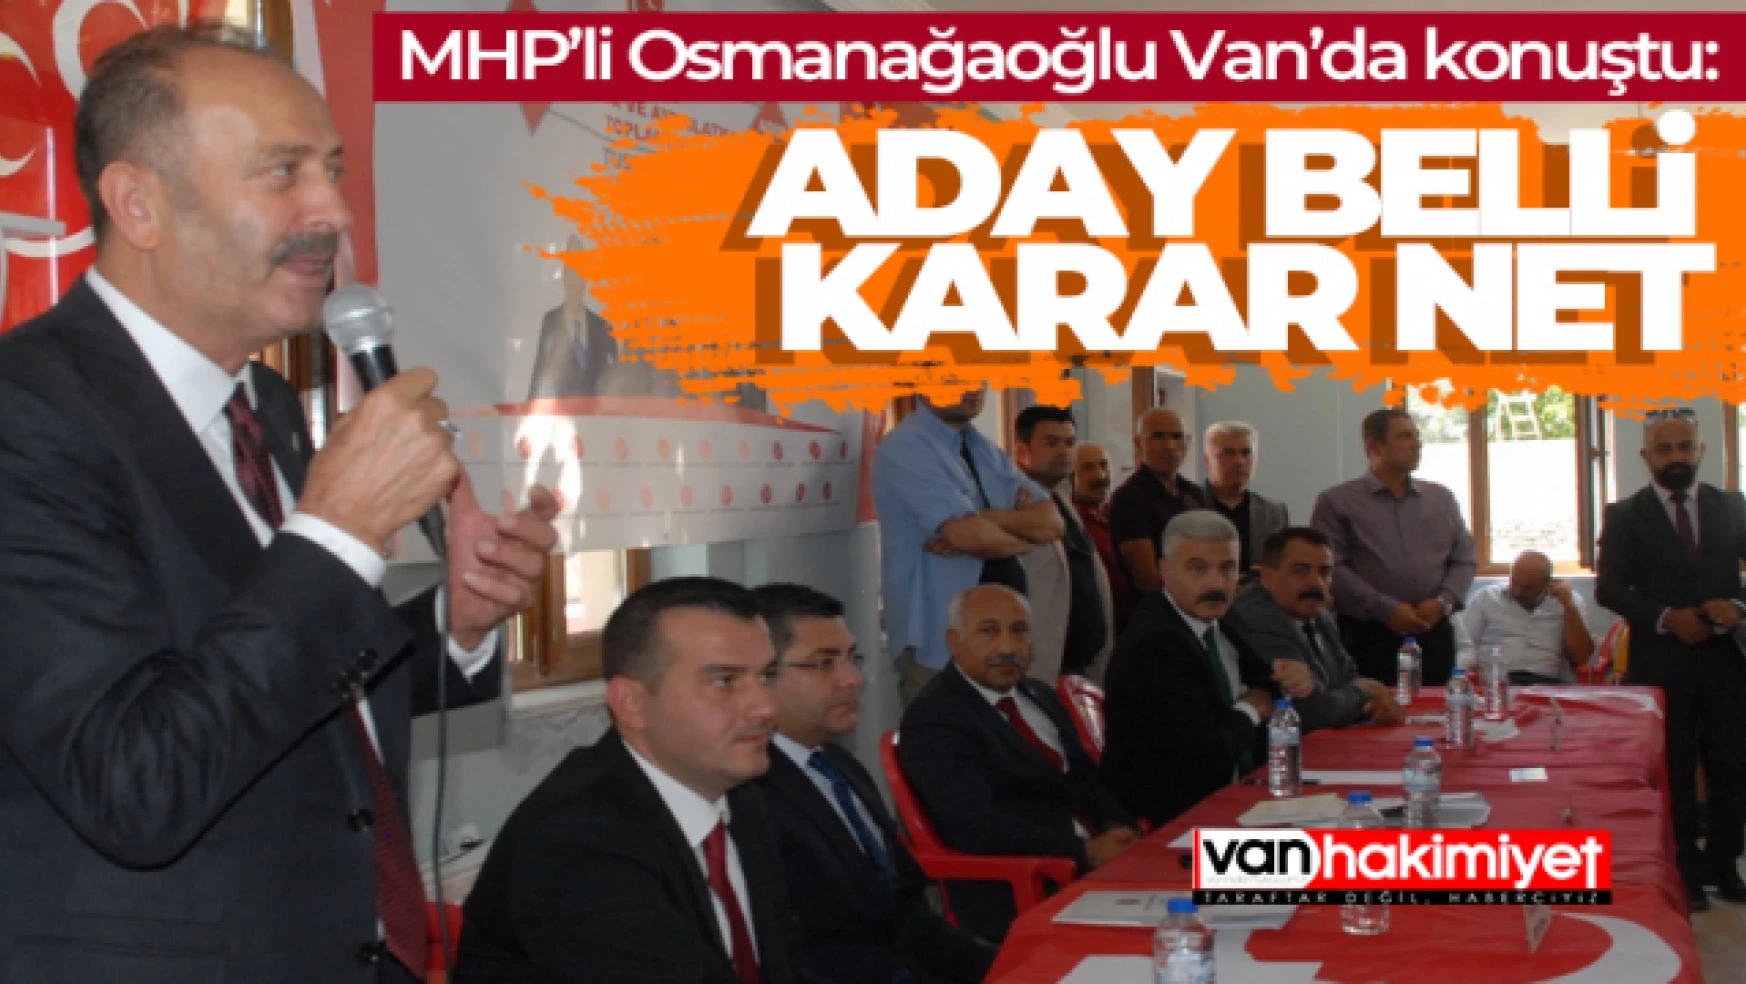 MHP'li Osmanağaoğlu Alaköy'de büyük bir çoşkuyla karşılandı